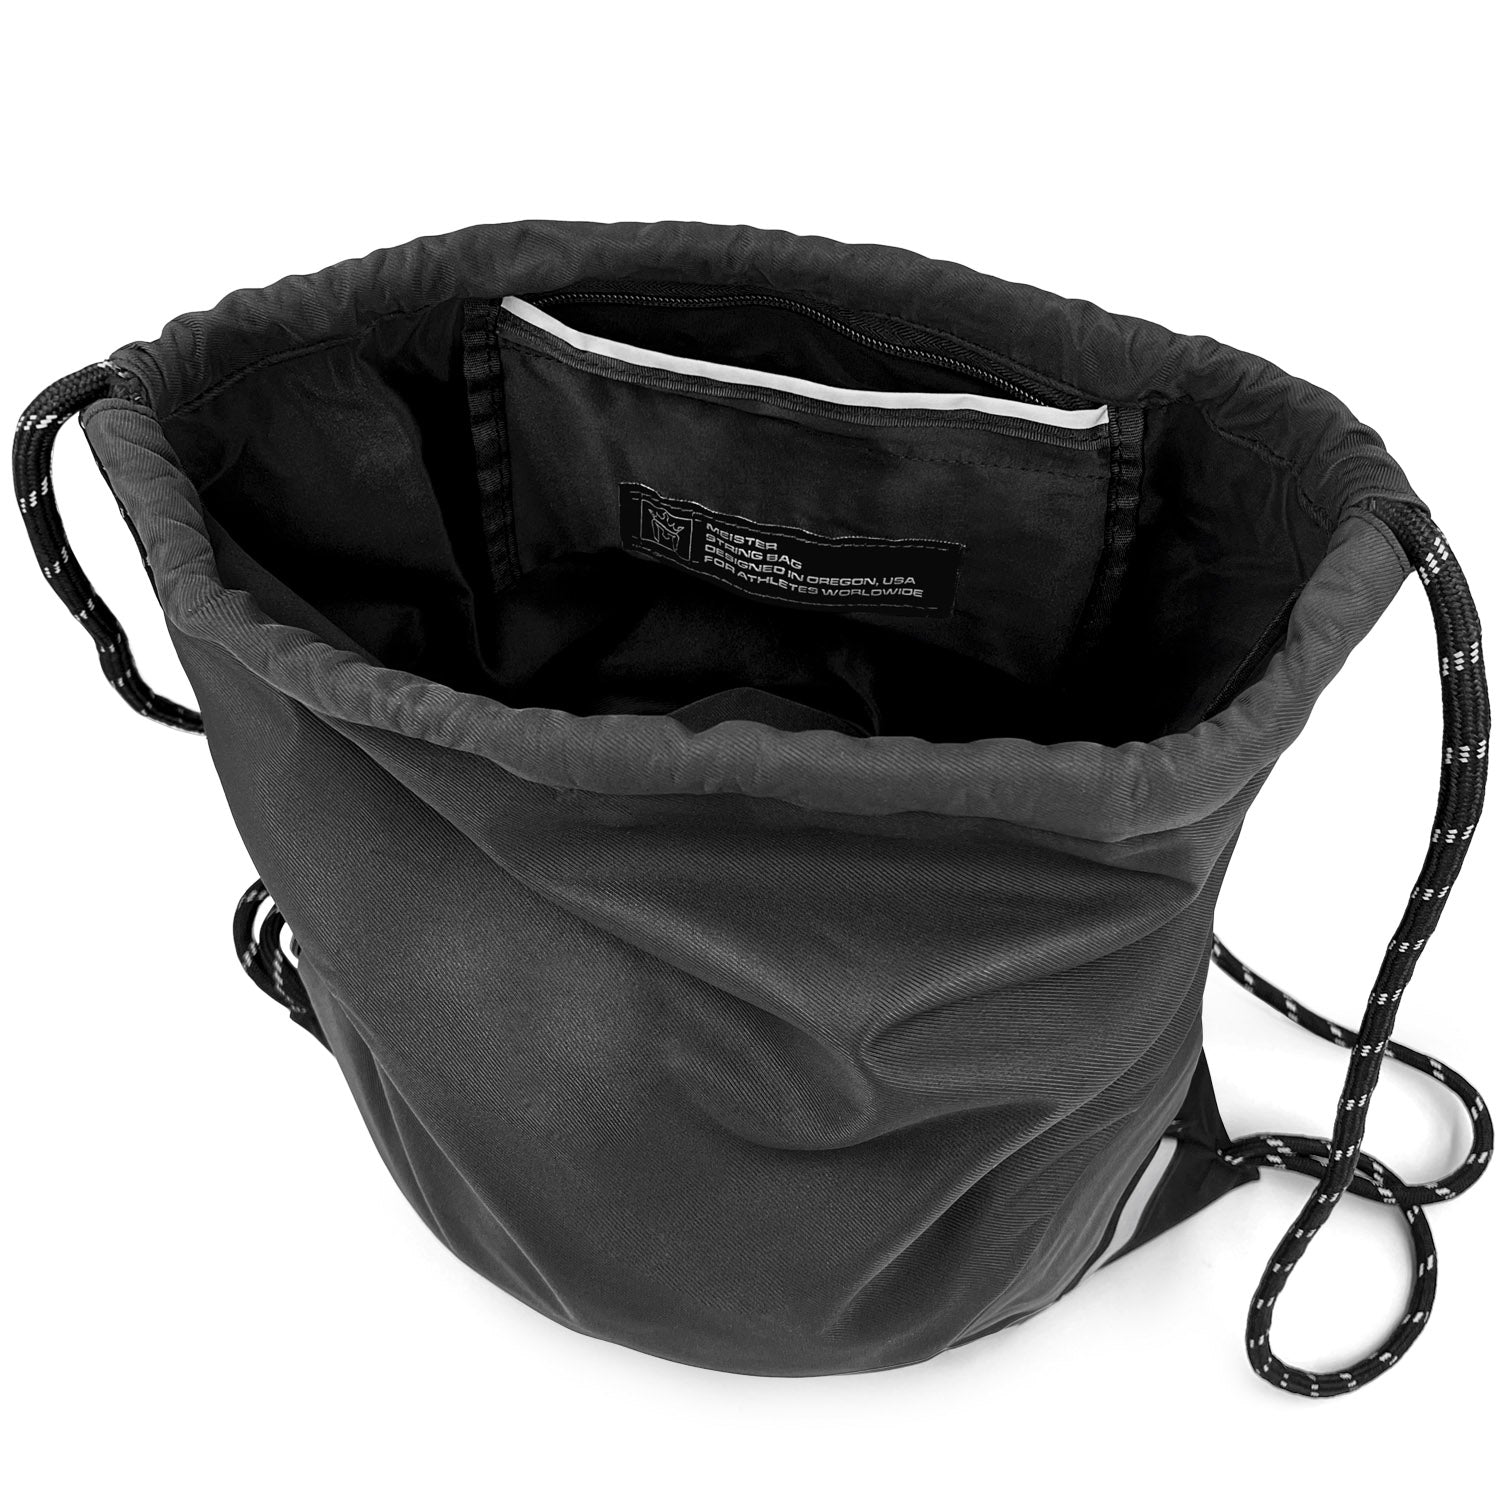 Meister XL Drawstring Backpack String Bag - Black/Reflective